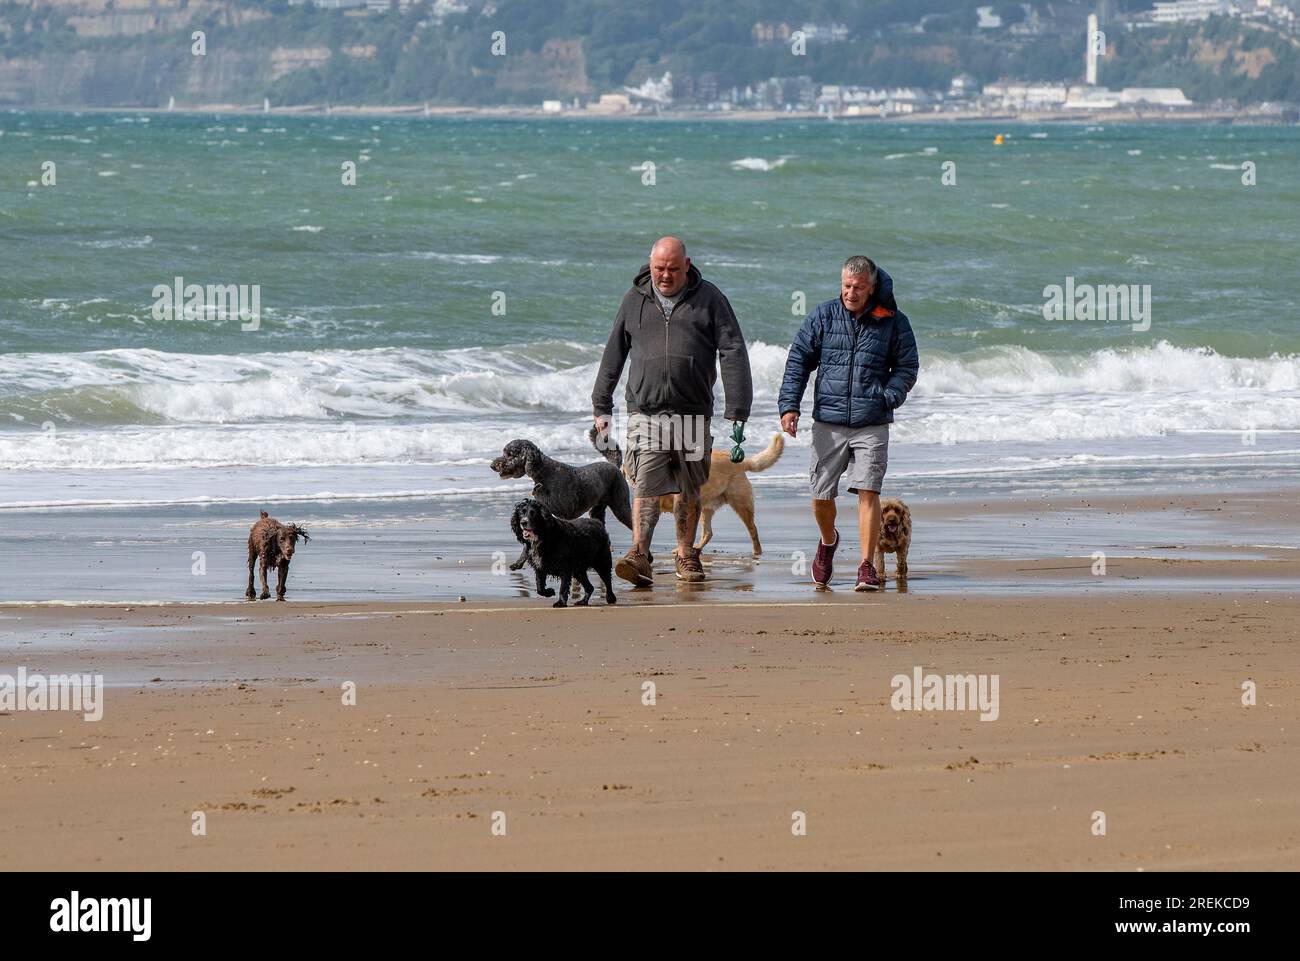 Zwei Männer mittleren Alters gehen mit einer großen Anzahl von Hunden am Strand zusammen in sandown auf der Insel wight spazieren. Stockfoto